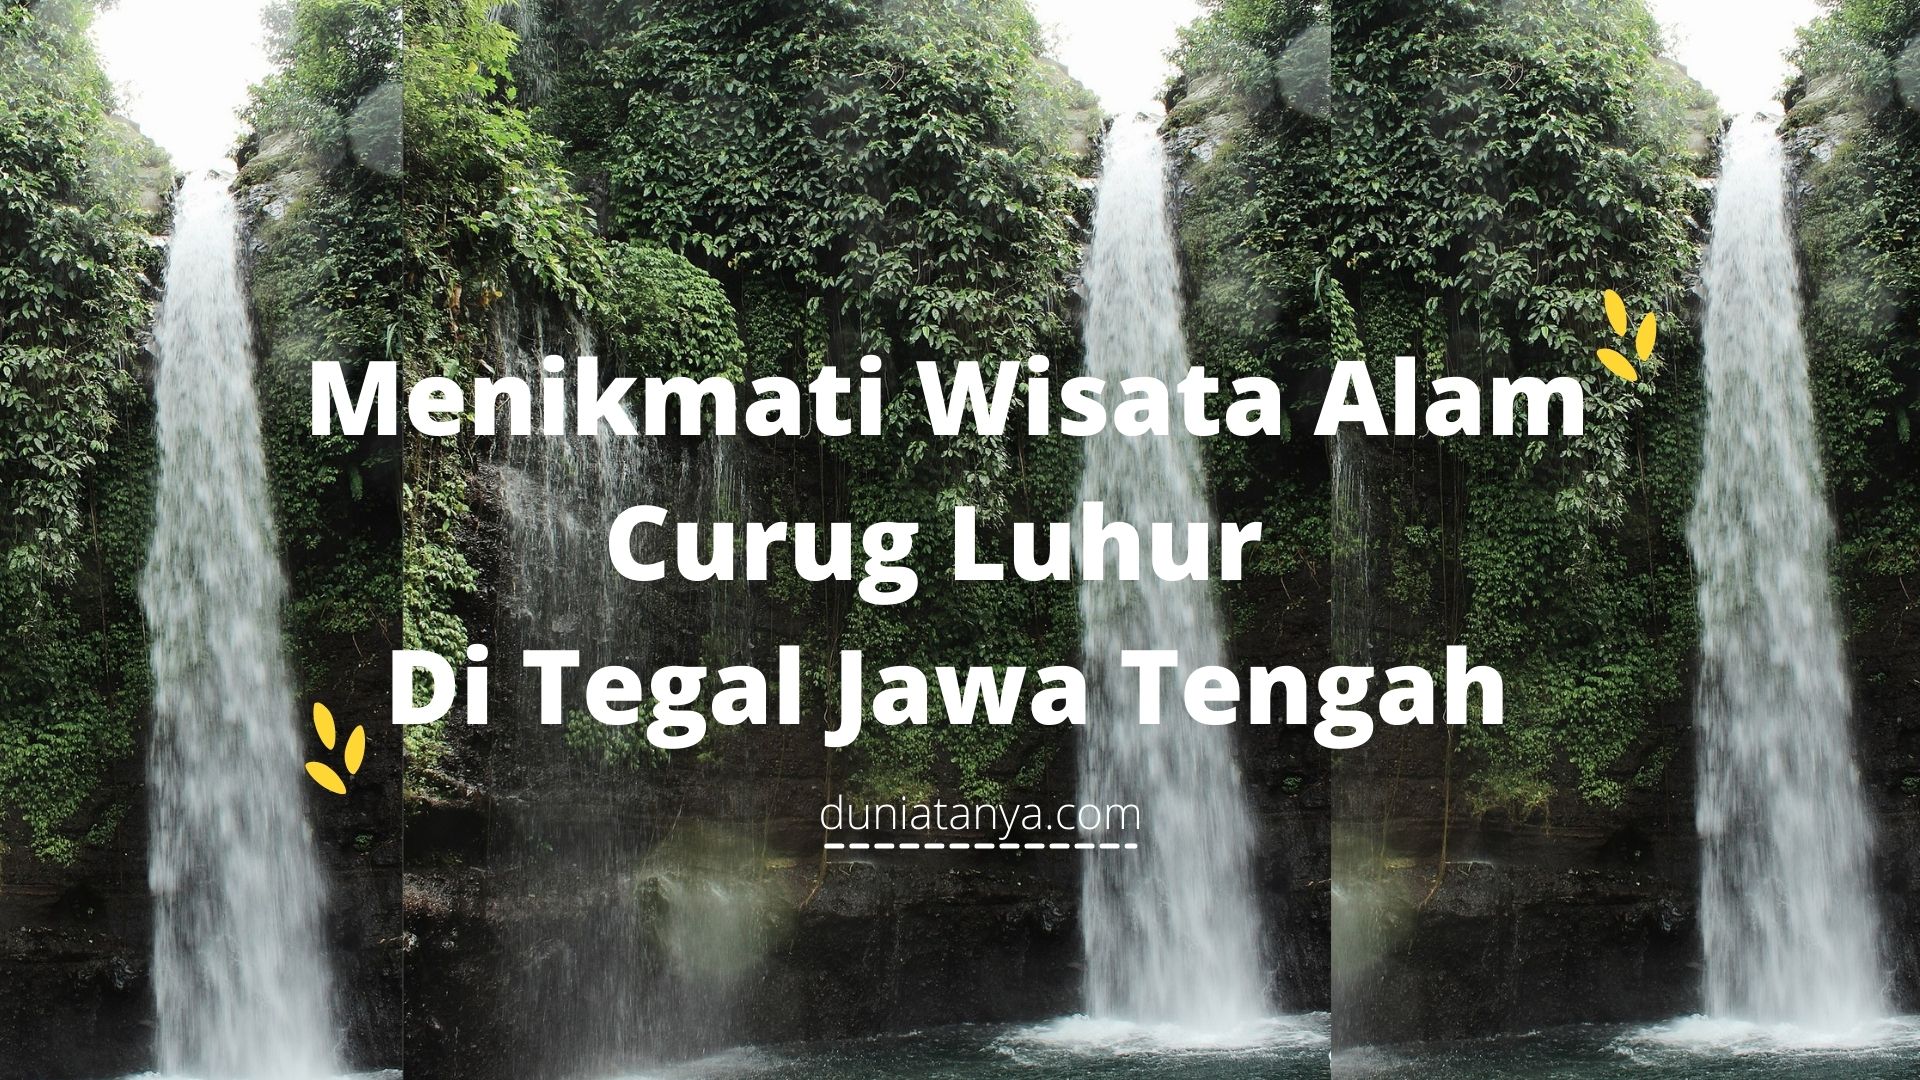 You are currently viewing Menikmati Wisata Alam Curug Luhur Di Tegal Jawa Tengah